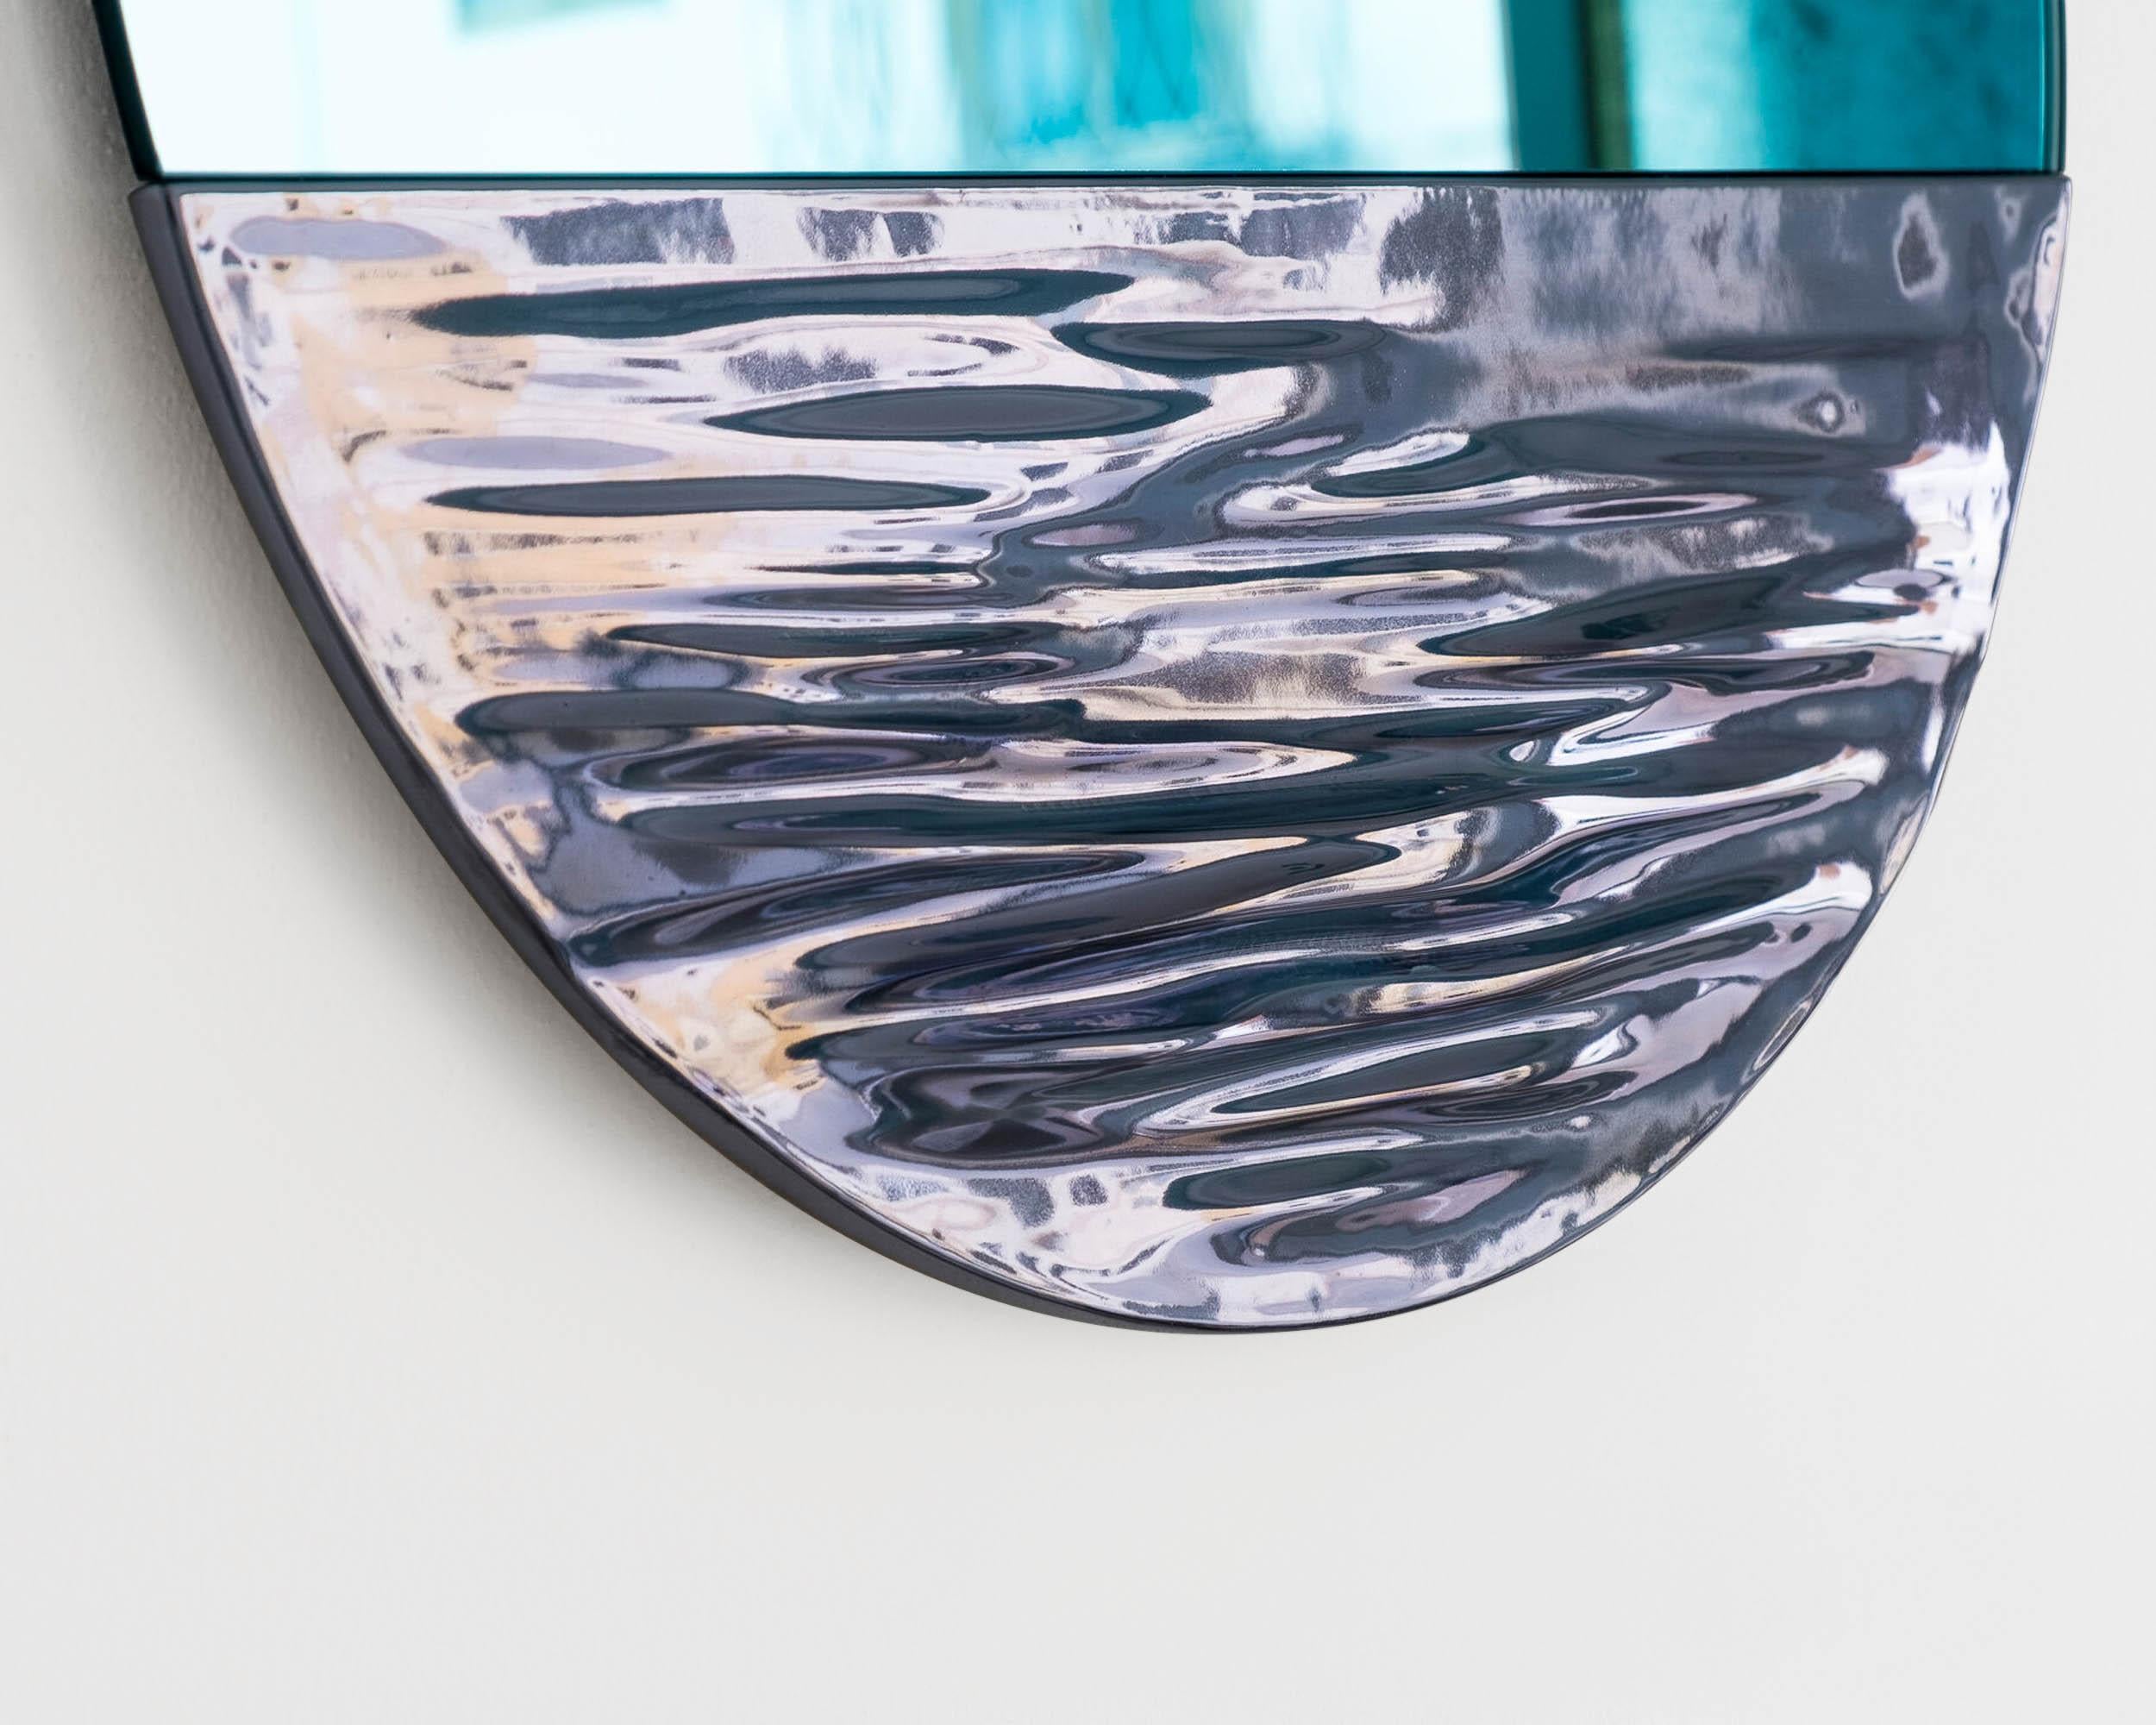 Orizon lebhaftes Blau
Runder Spiegel signiert von Ocrùm 

Abmessungen: 21.75 x 1,75 Zoll
Materialien: Handdekorierte glasierte Keramik, Glasspiegel
Farben: Leuchtendes Blau mit hellblauem Spiegel
Individuelle Anpassung: Glastönung,